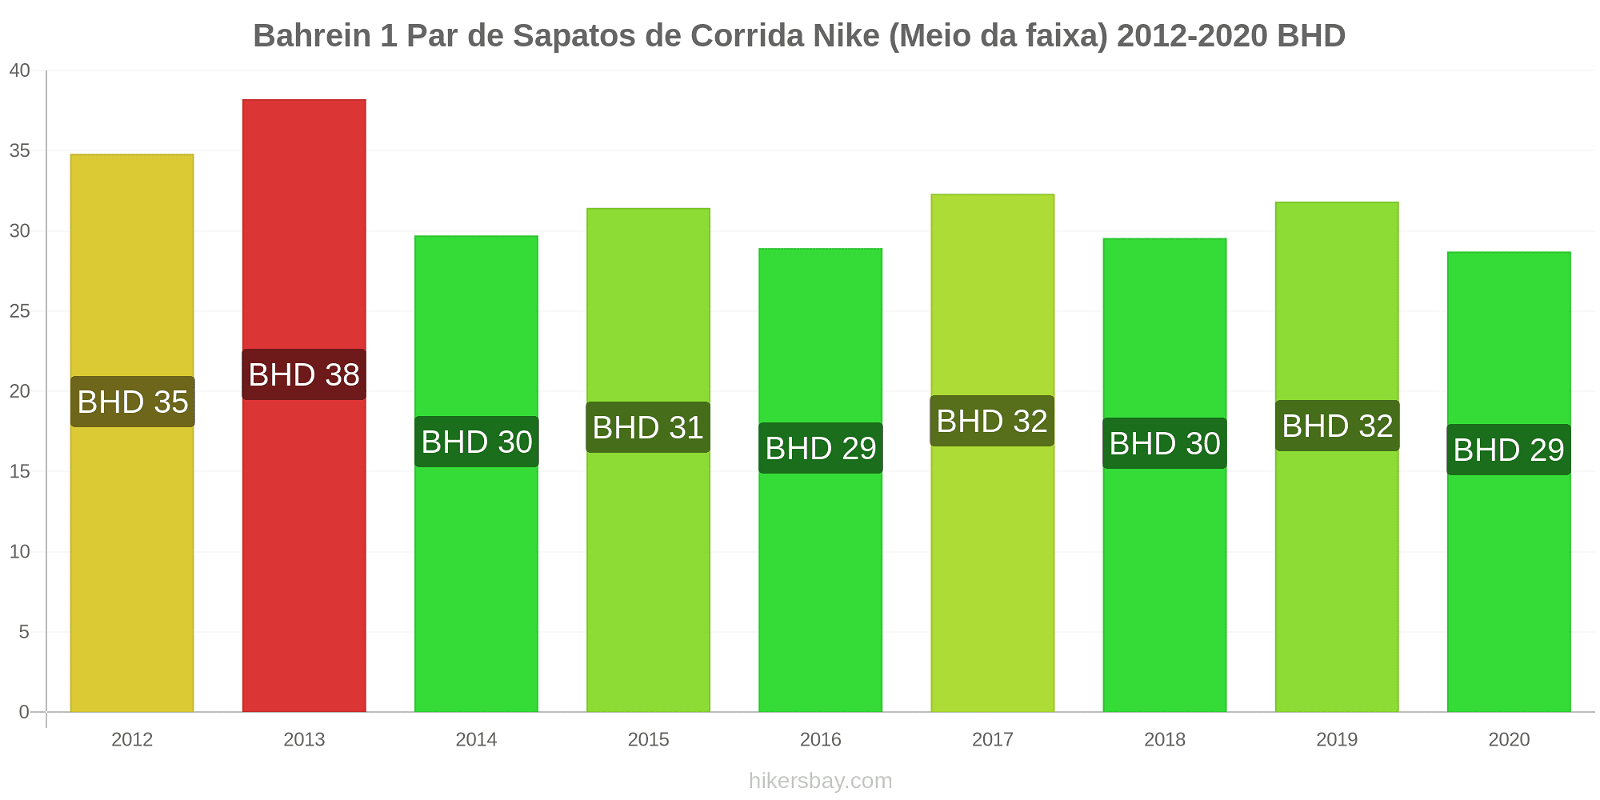 Bahrein variação de preço 1 par de tênis Nike (mid-range) hikersbay.com